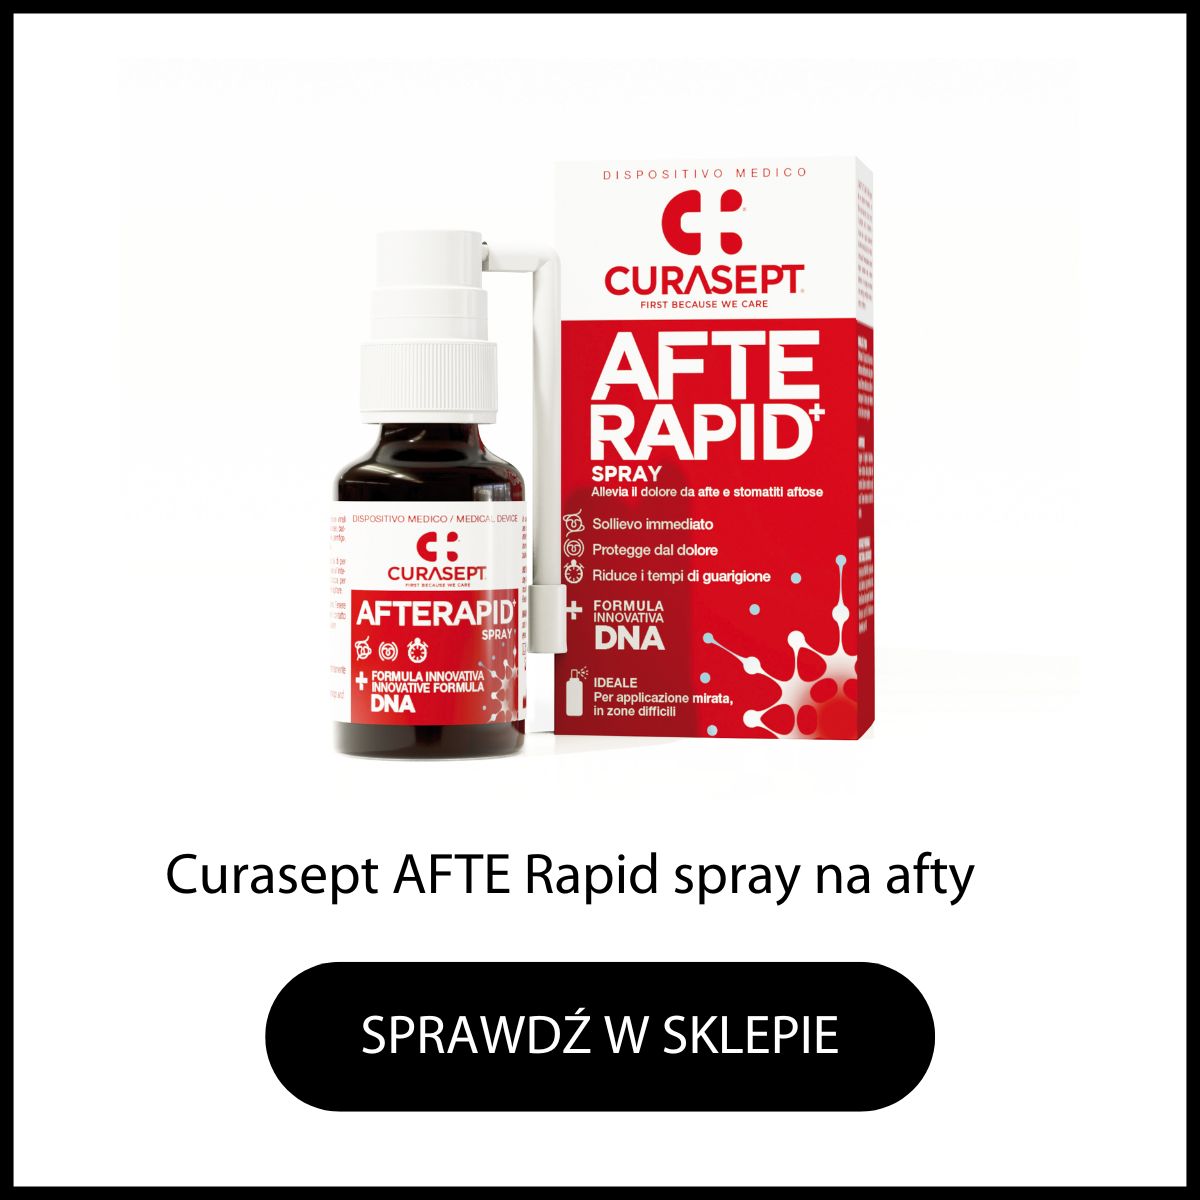 Curasept Afte Rapid spray na bolesne afty